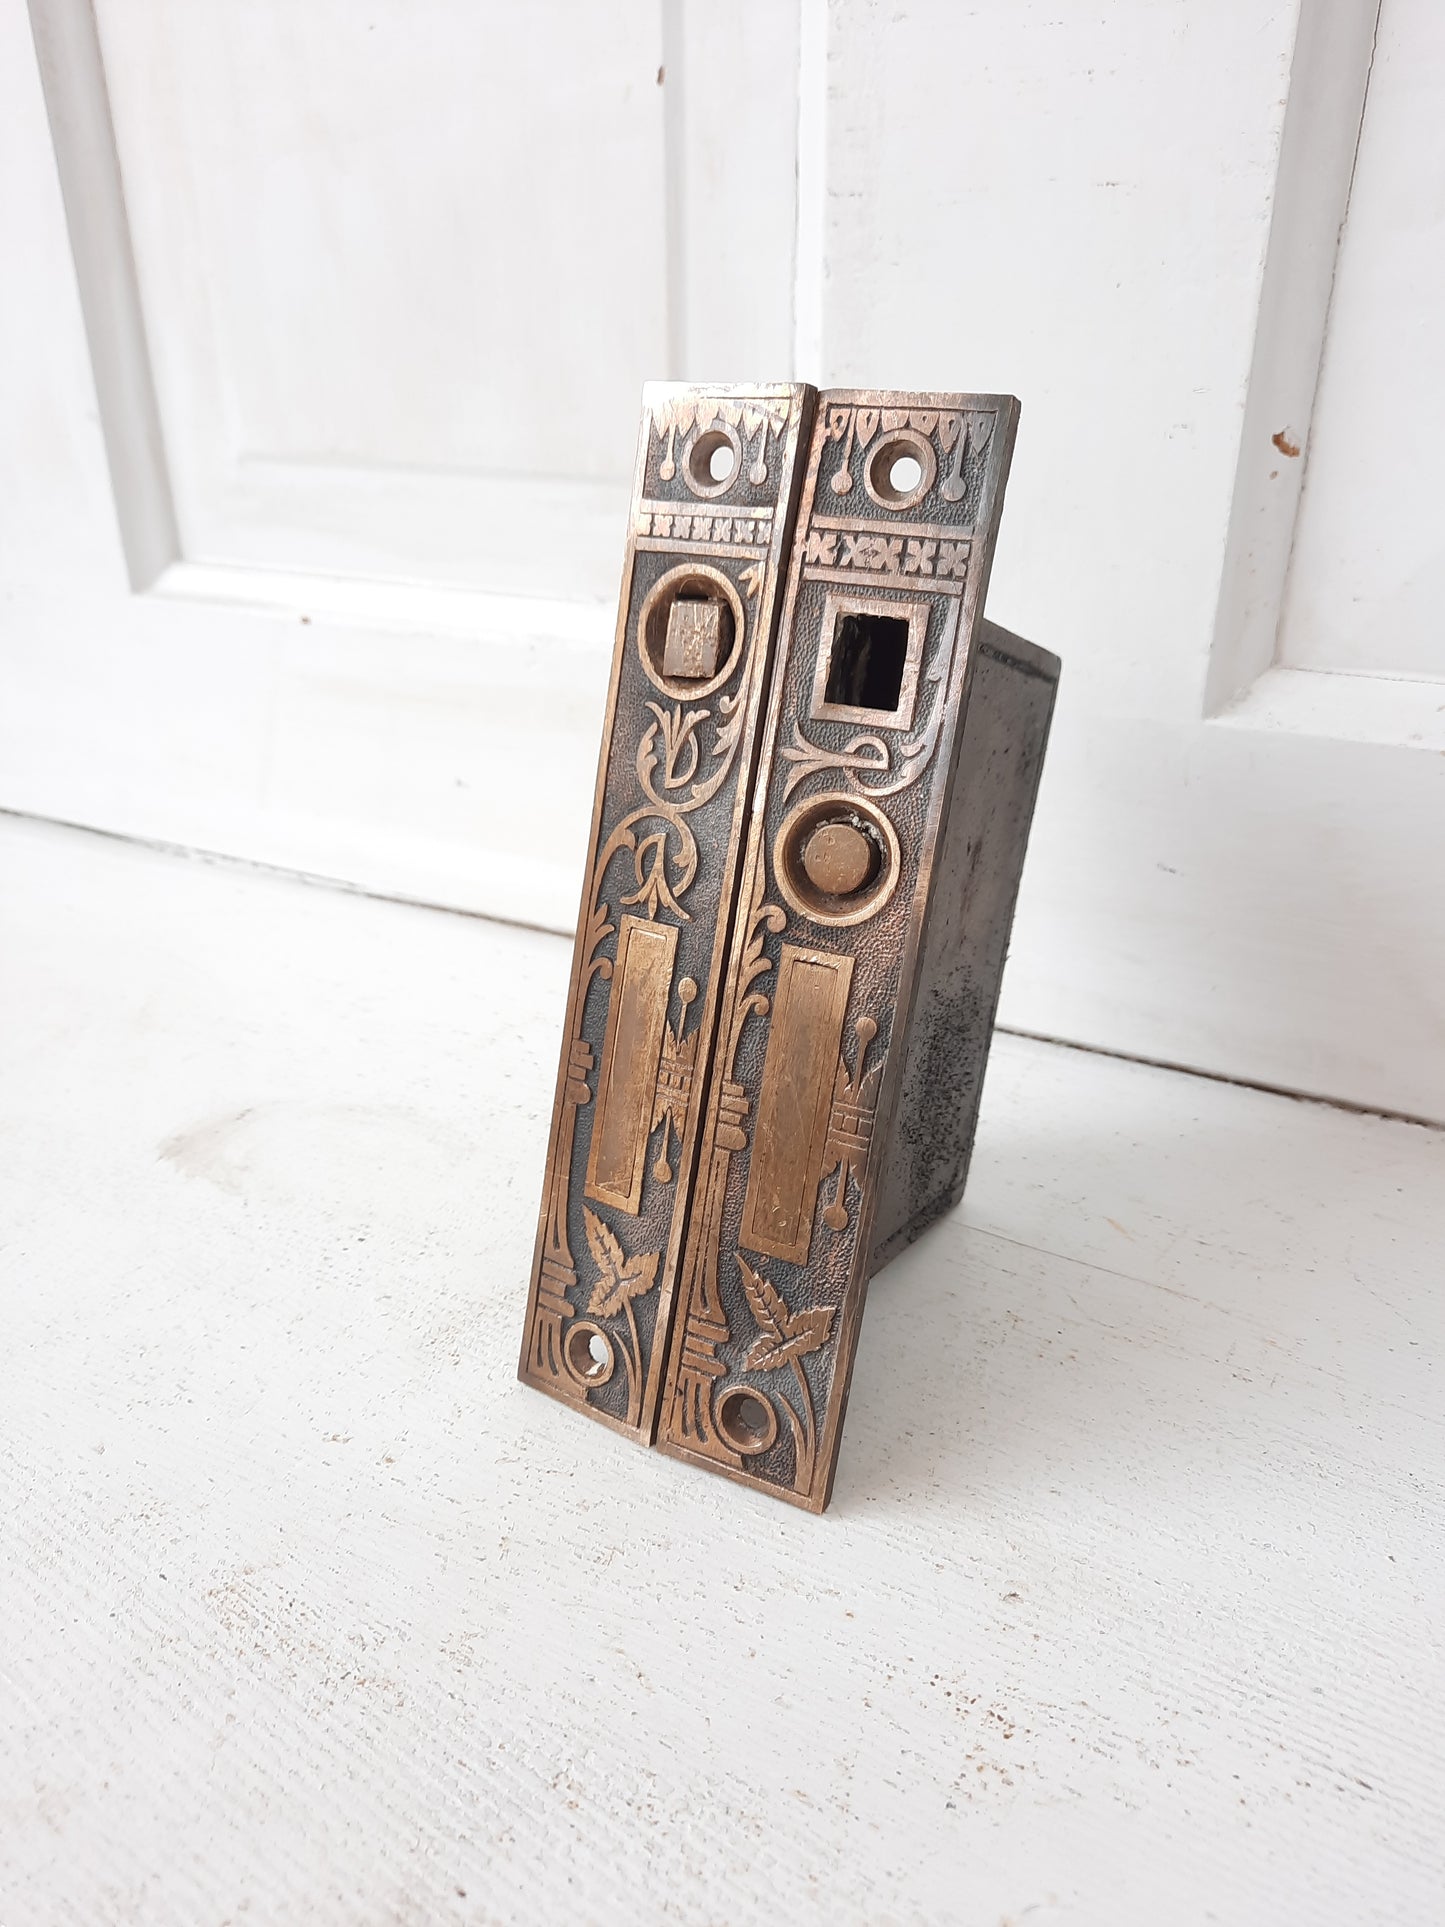 Pair of Ornate Antique Pocket Door Mortise Lock, Double Rolling Door Lock Working Condition 091611